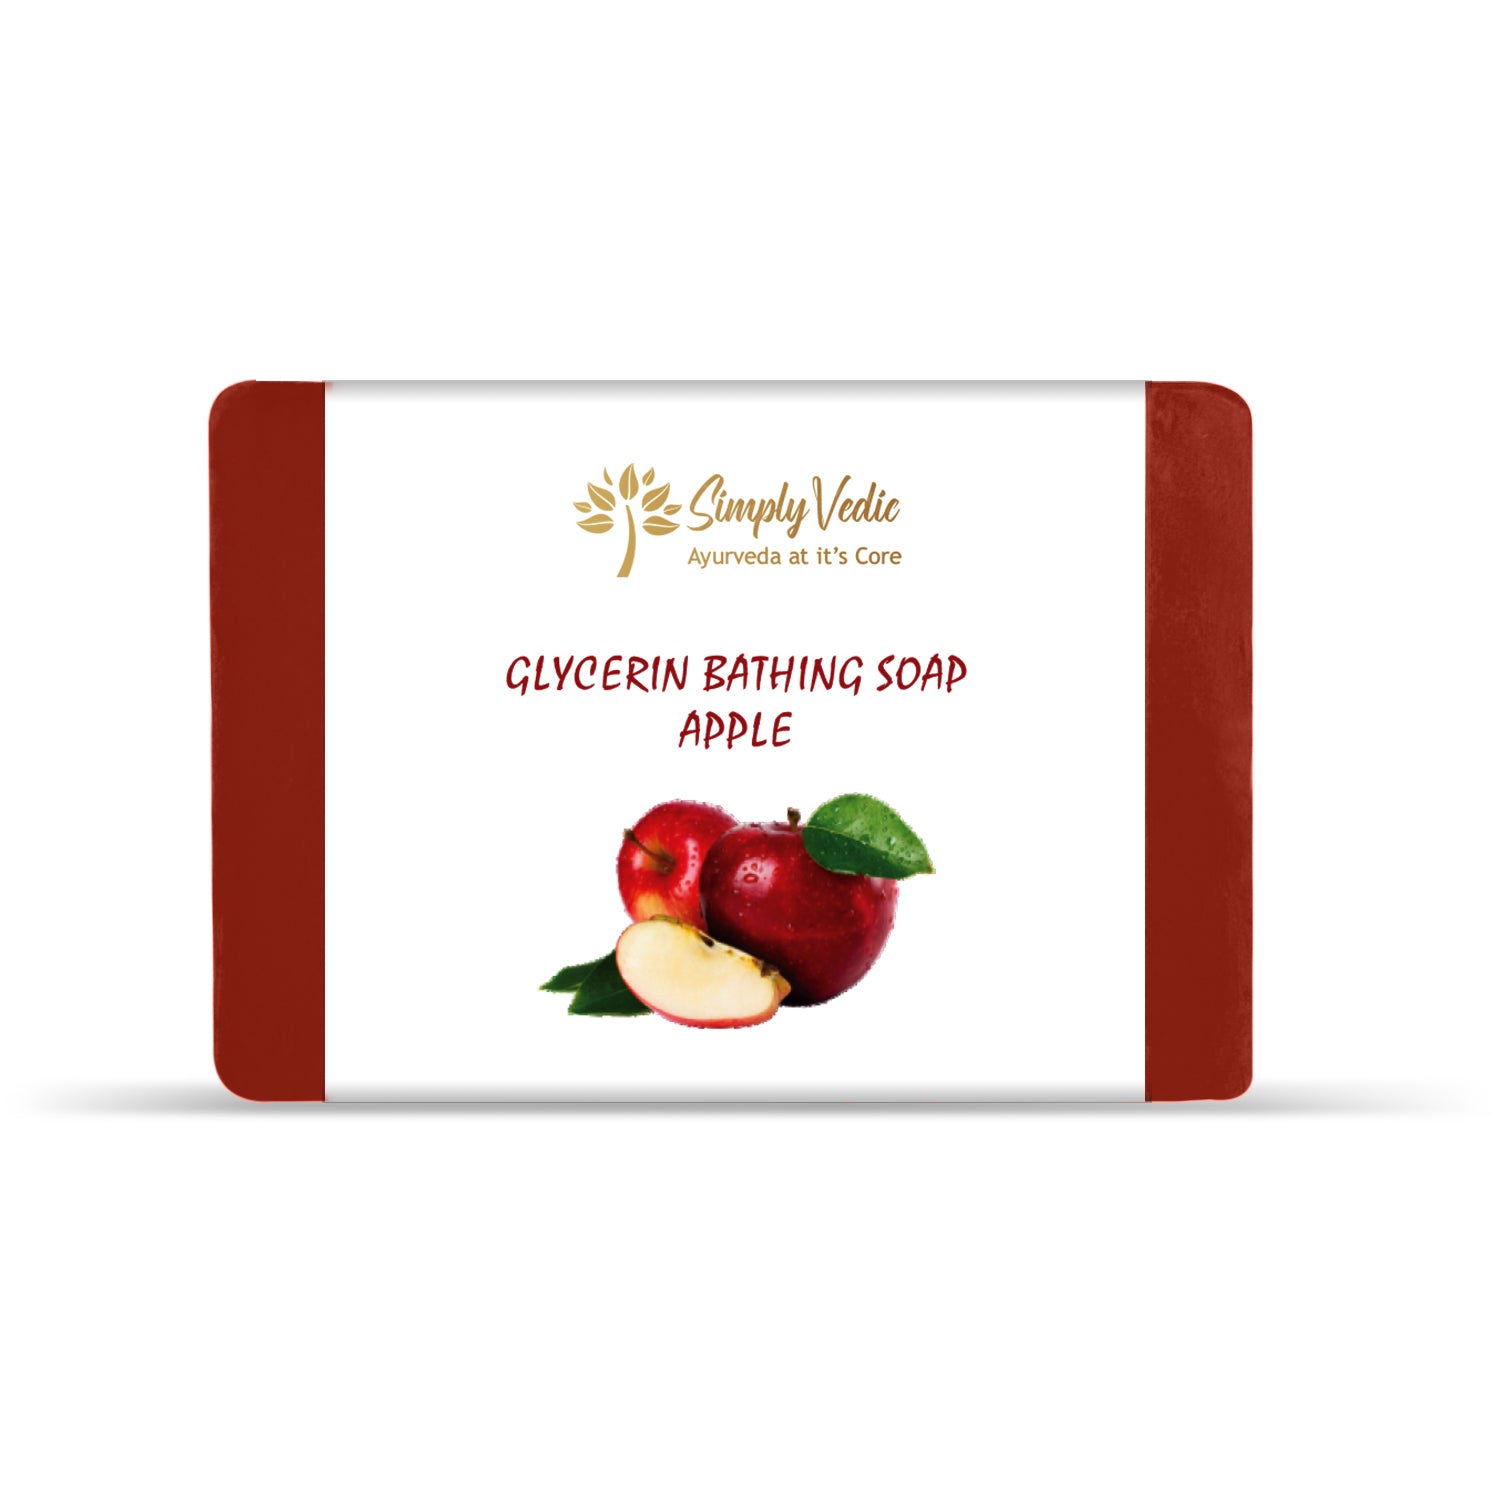 Simply Vedic's Apple Glycerin soap